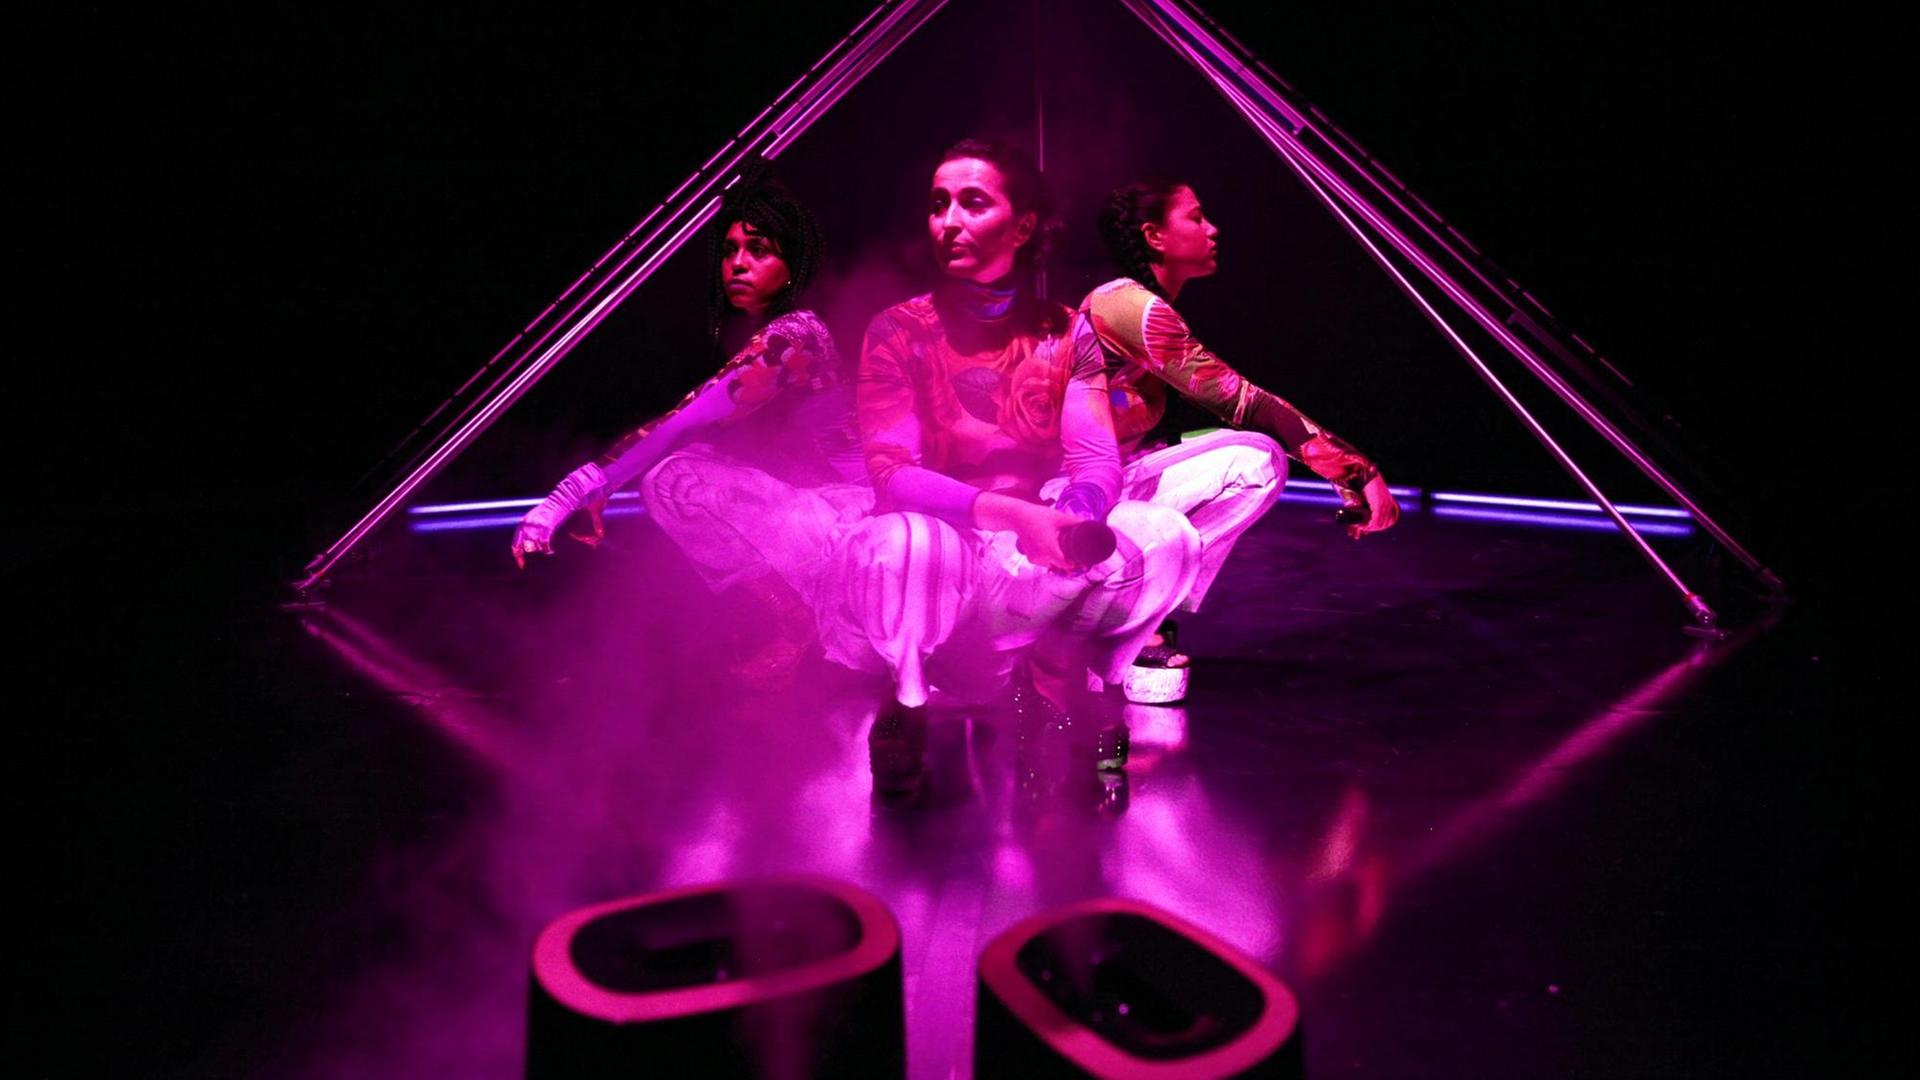 Drei Frauen hocken Rücken an Rücken auf einer Bühne, pink angestrahlt.